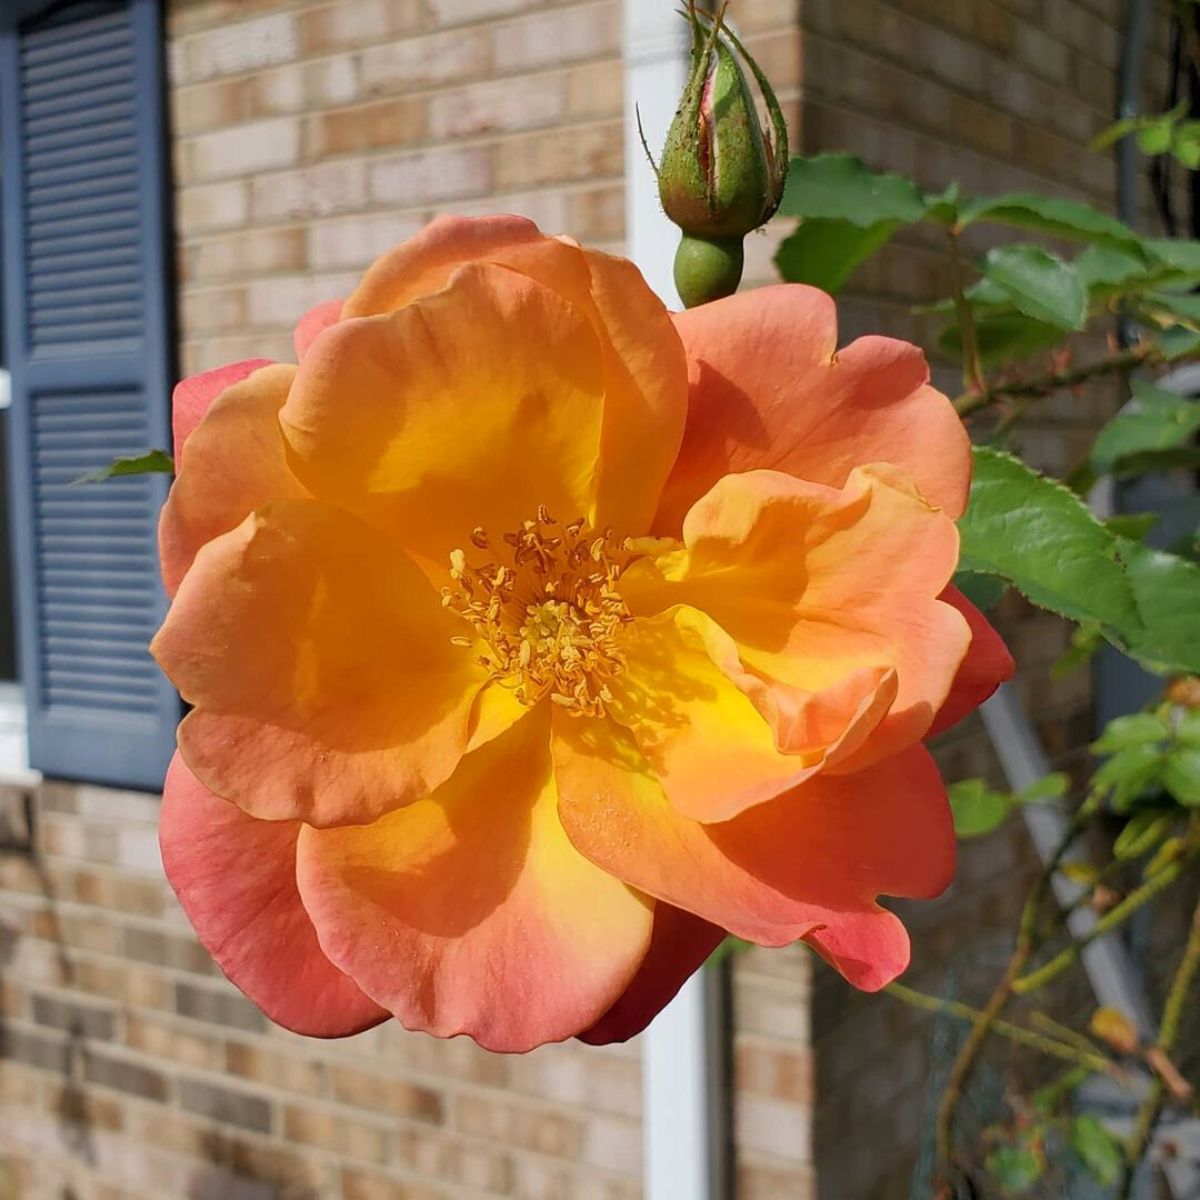 Bloomed Josephs coat climbing rose in garden